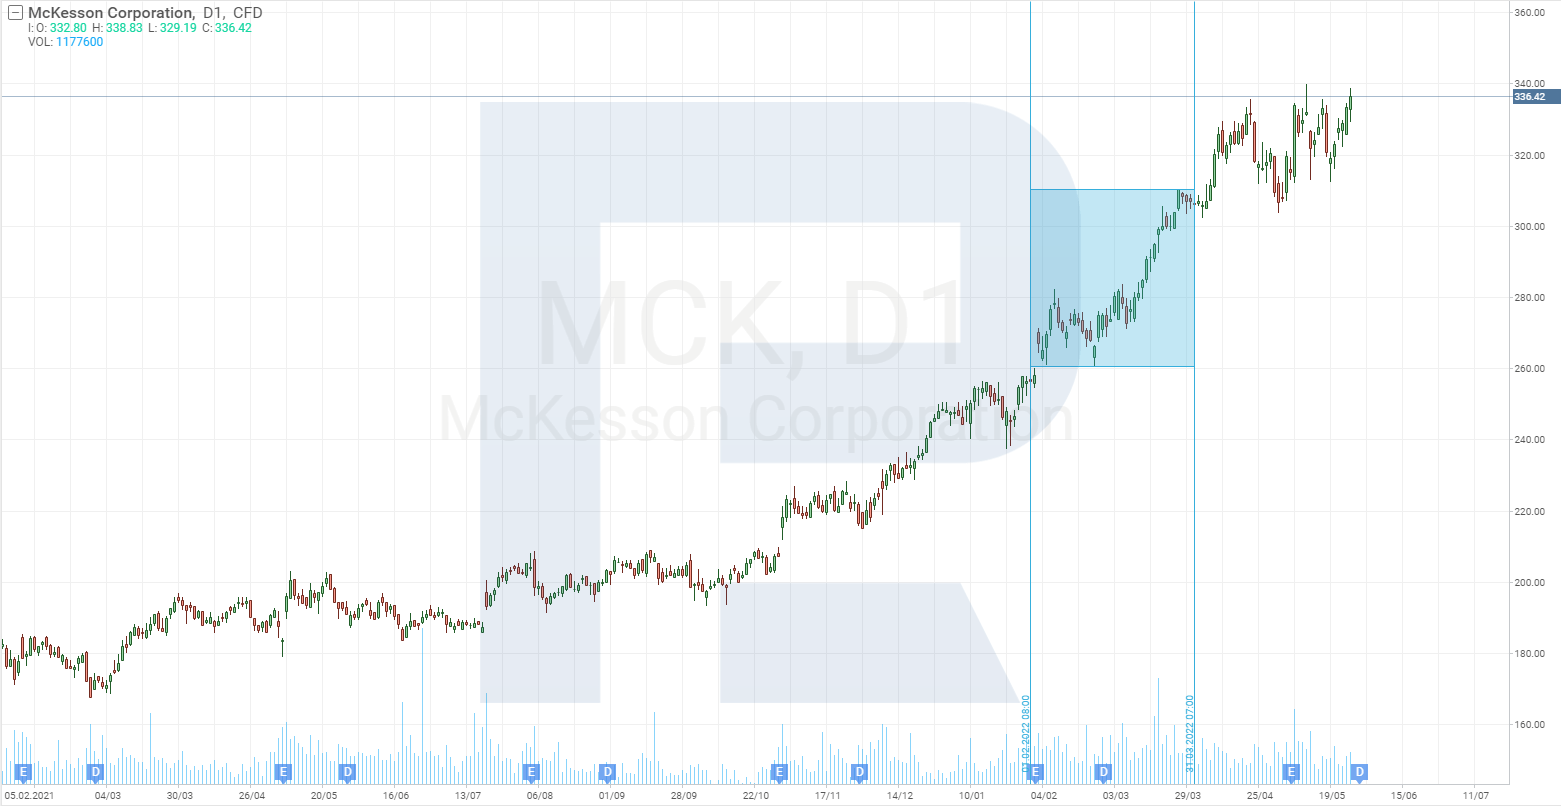 Tabela de preços das ações da McKesson Corporation